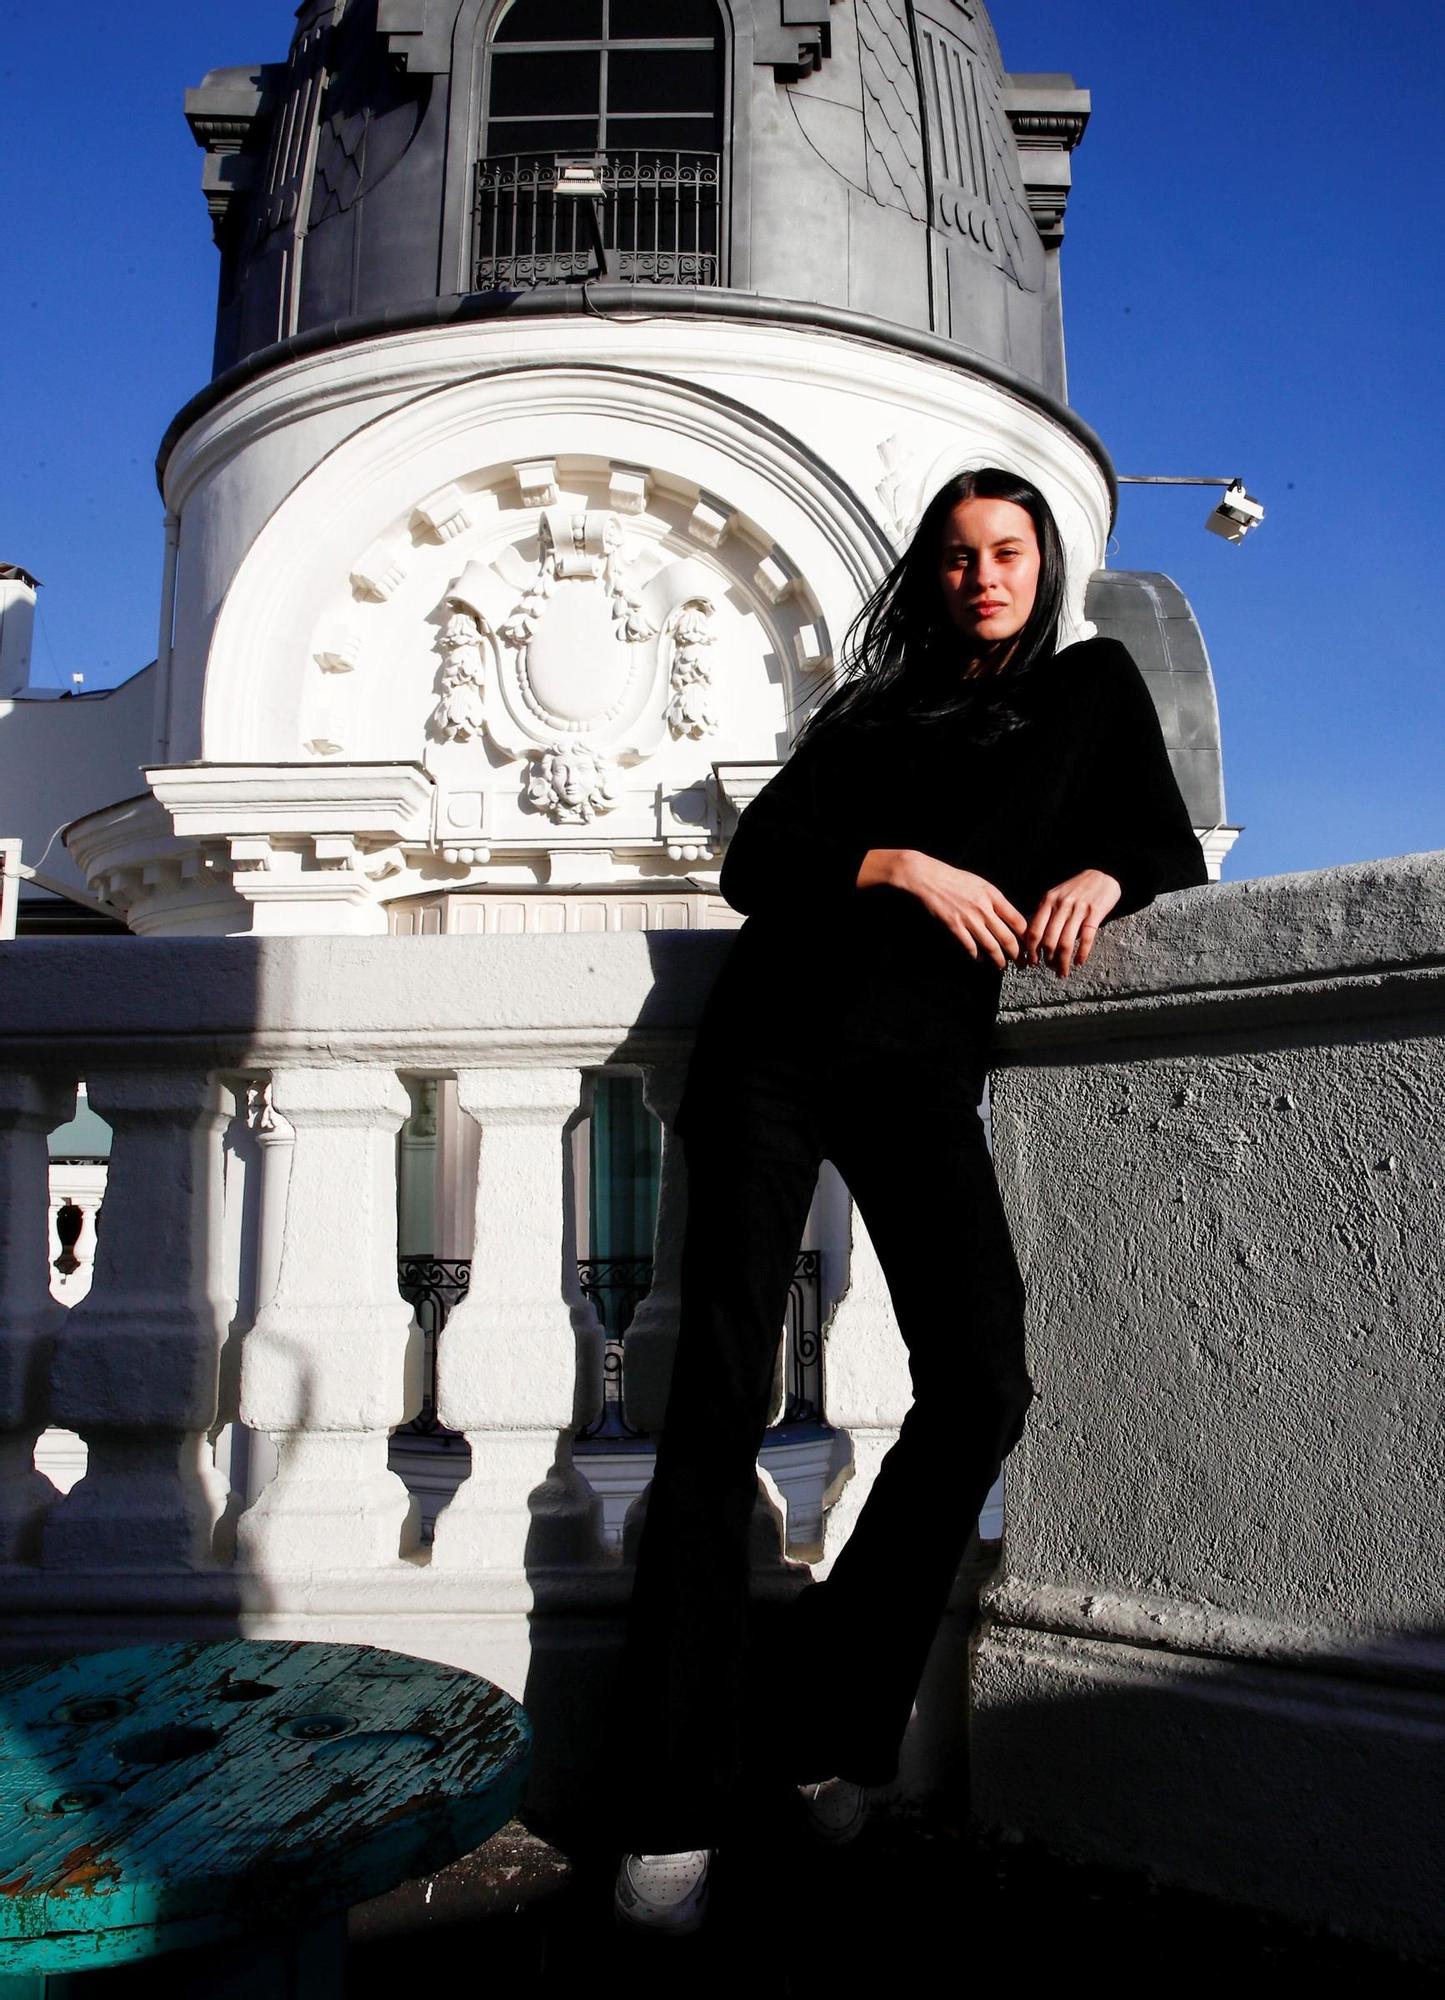 Milena Smit en una terraza de Madrid.